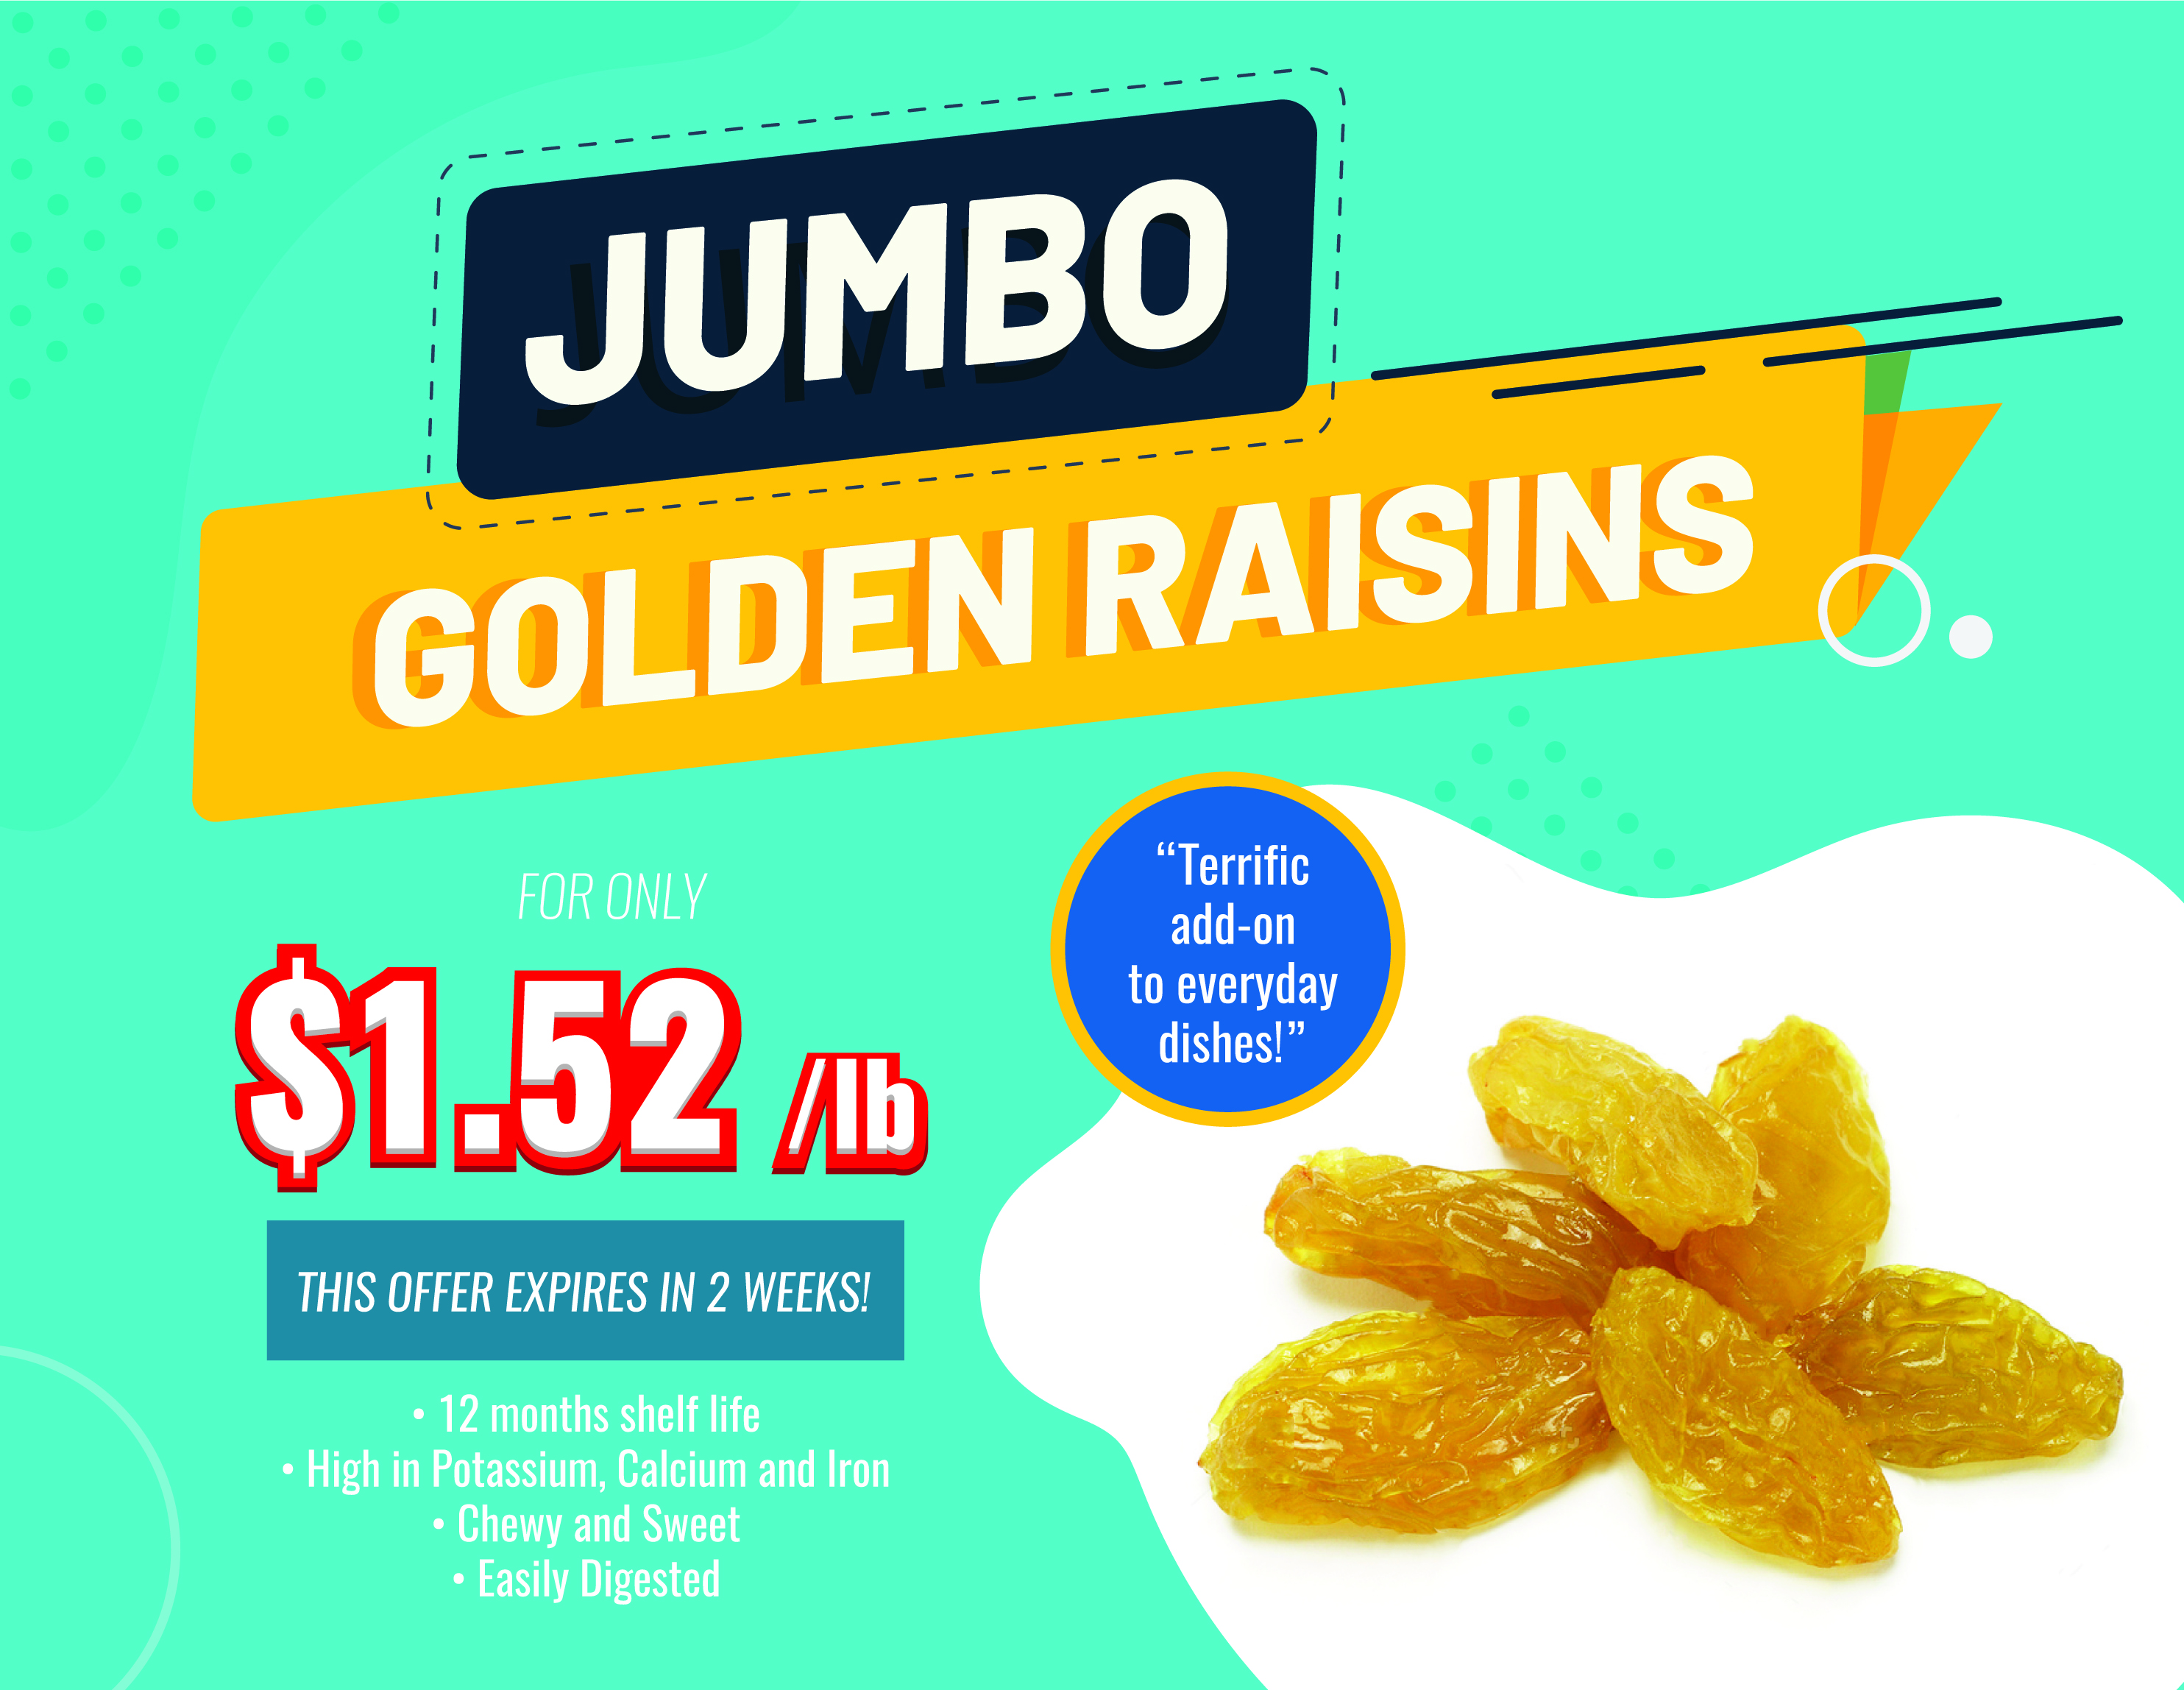 IMB’s Jumbo Golden Raisins For Only $1.52/lb